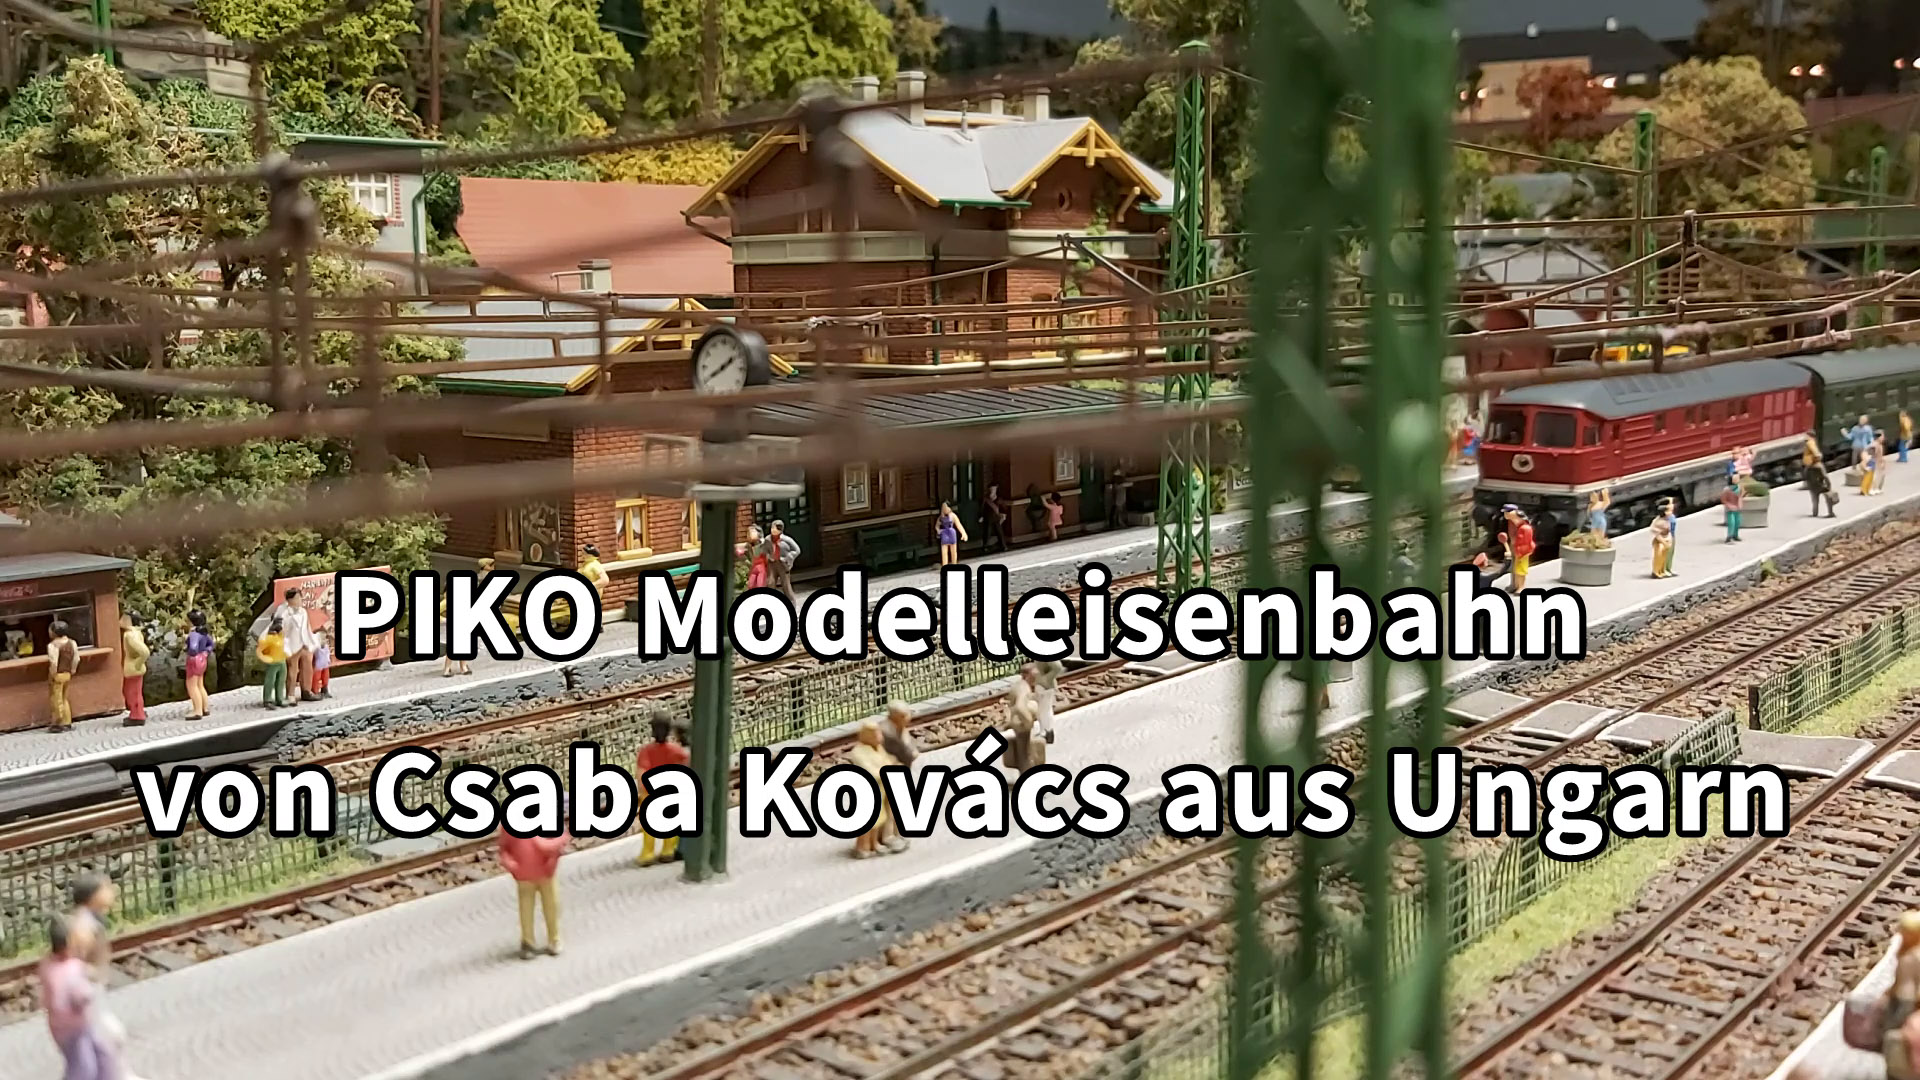 PIKO Modelleisenbahn - Eine bemerkenswerte DDR Spur H0 Modellbahn aus Ungarn